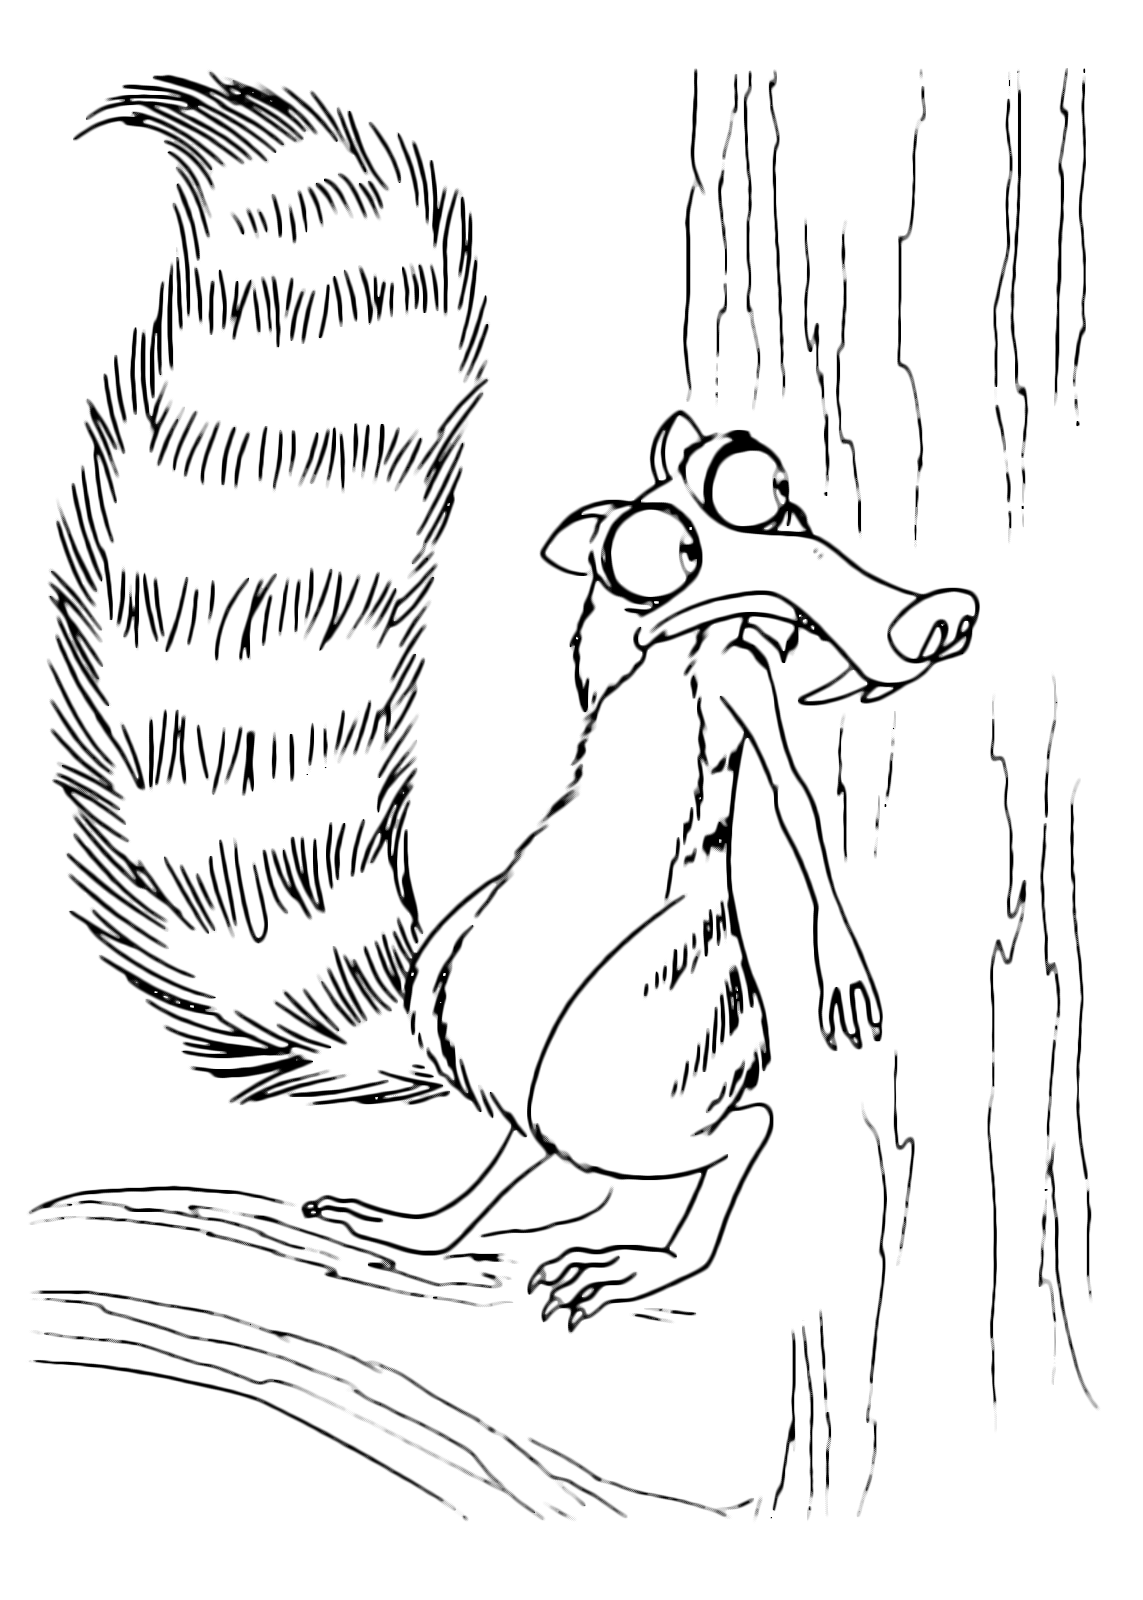 L'era glaciale - Scrat lo scoiattolino si nasconde dietro il tronco di un albero